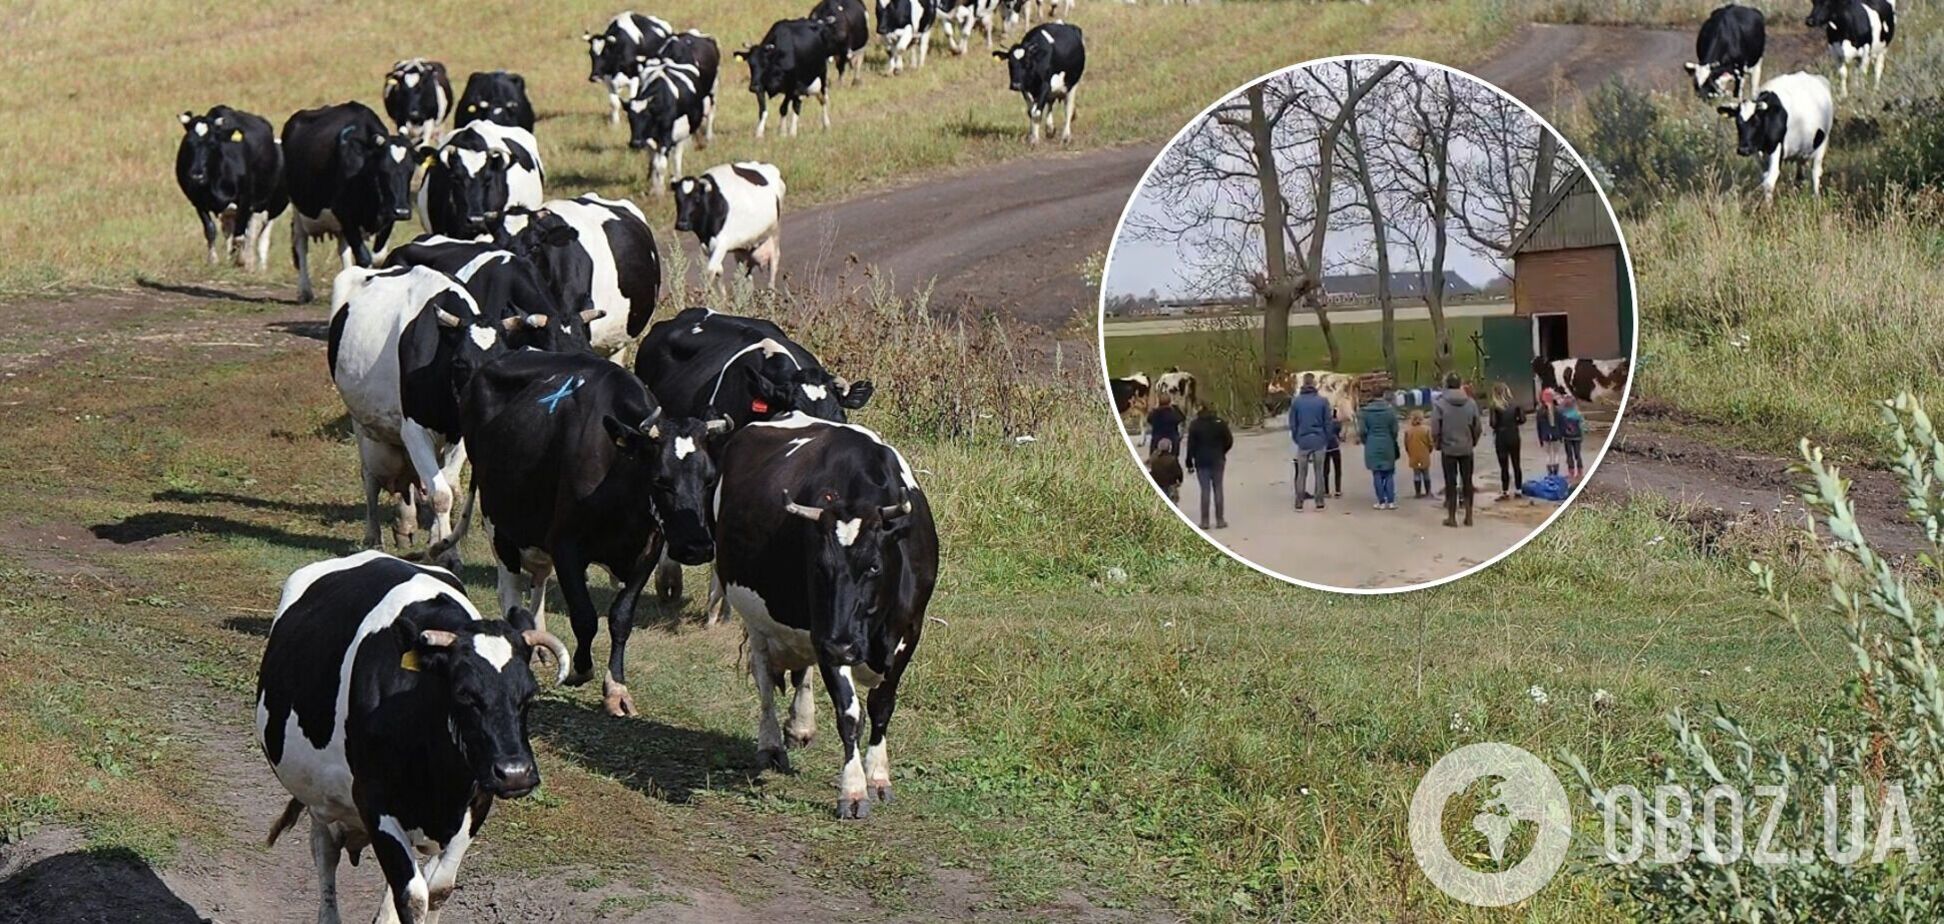 Стадо коров выпустили на улицу и их реакция рассмешила очевидцев. Видео